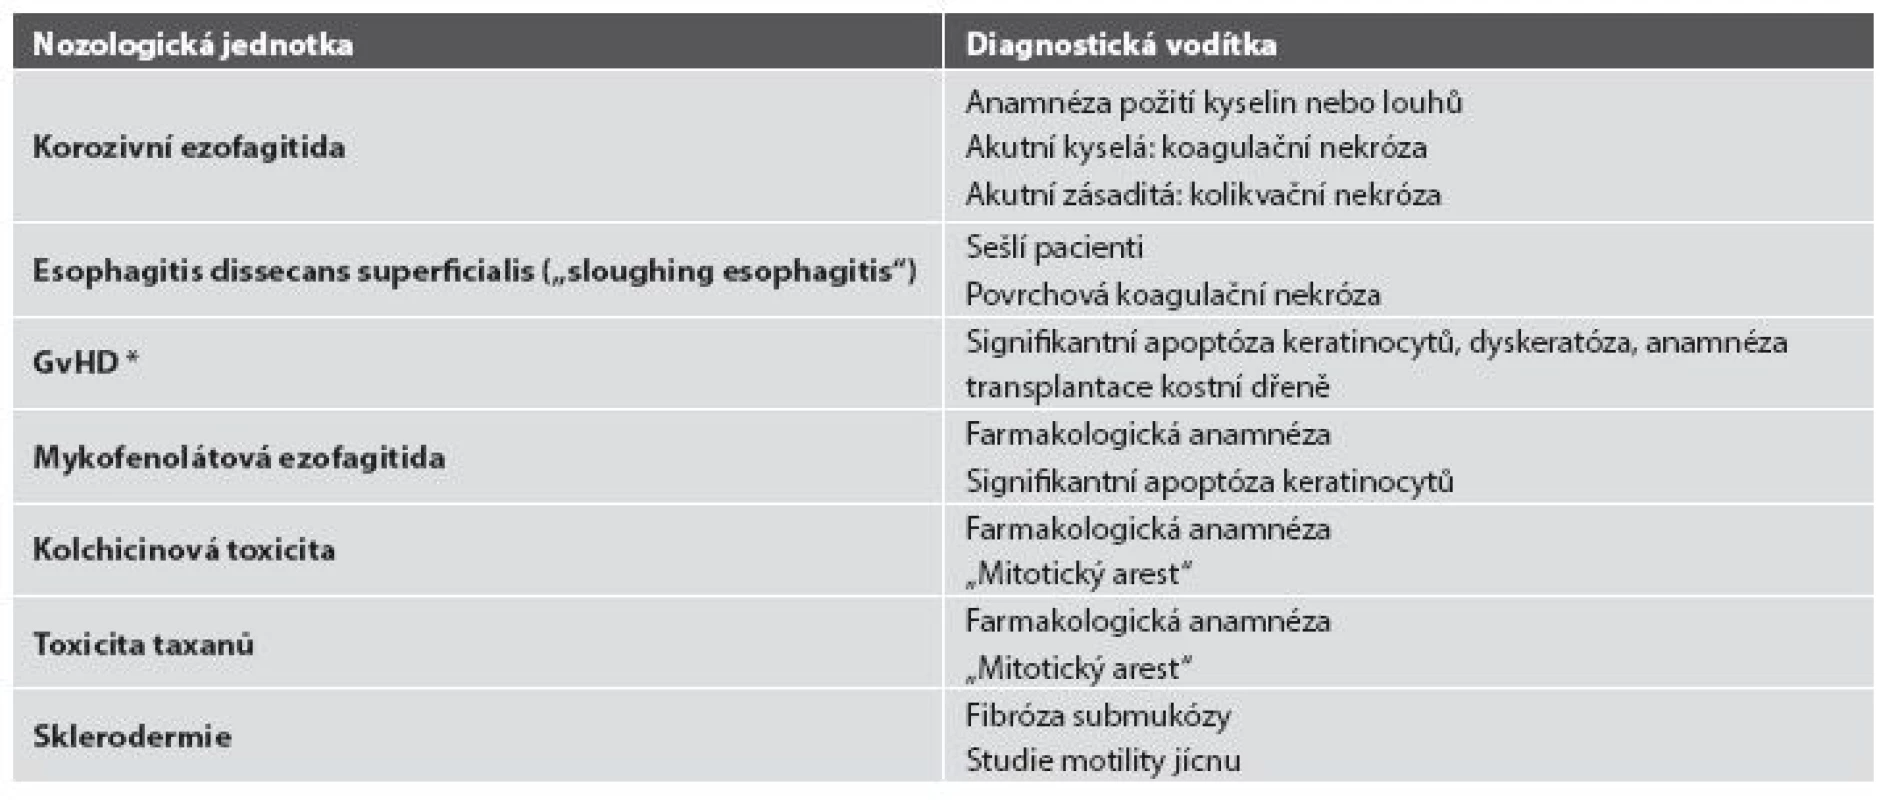 Diferenciální diagnostika ezofagitid s nápadně řídkým zánětlivým infiltrátem.